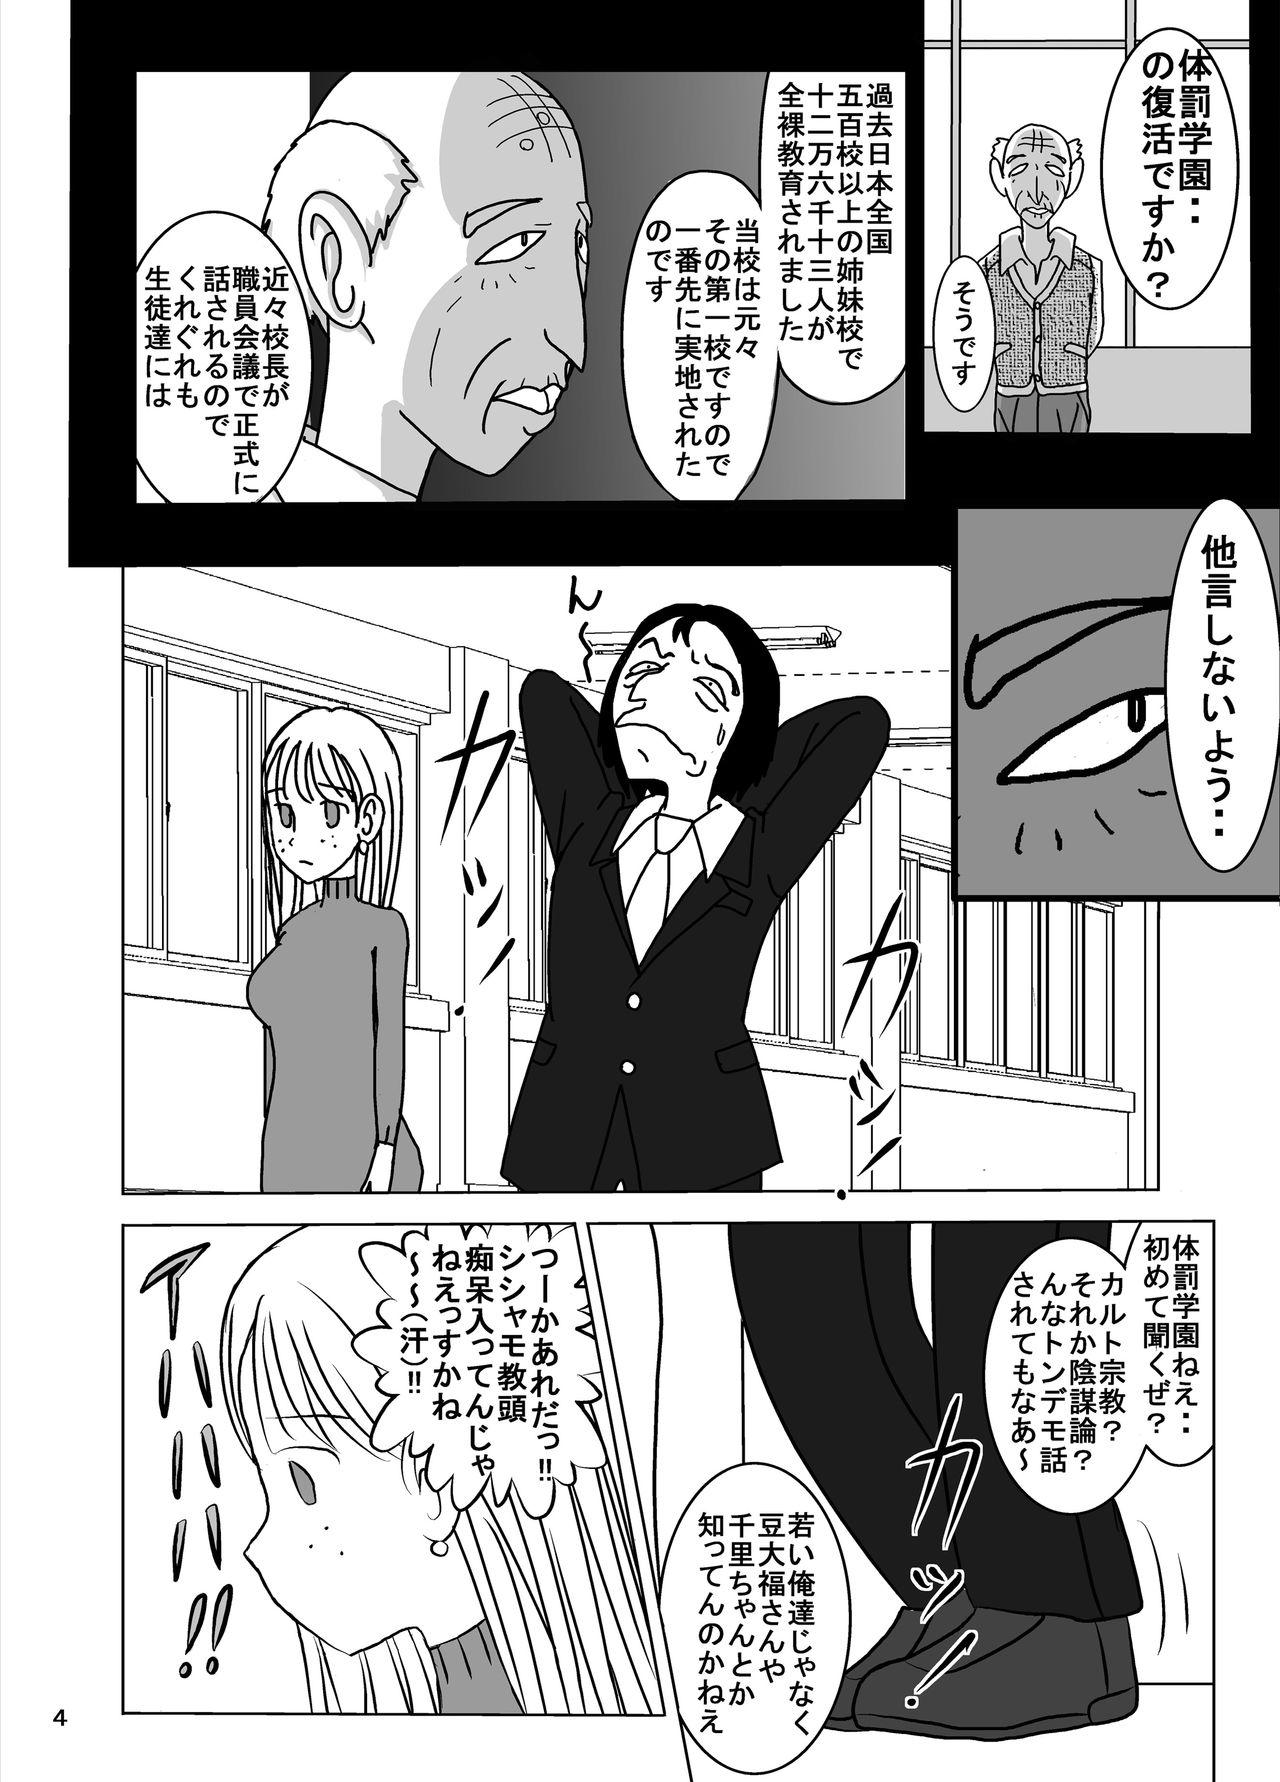 Semen Shukudai Wasuremashitako-san e no Zenra Kyouiku 7 - Original Women Sucking Dicks - Page 4